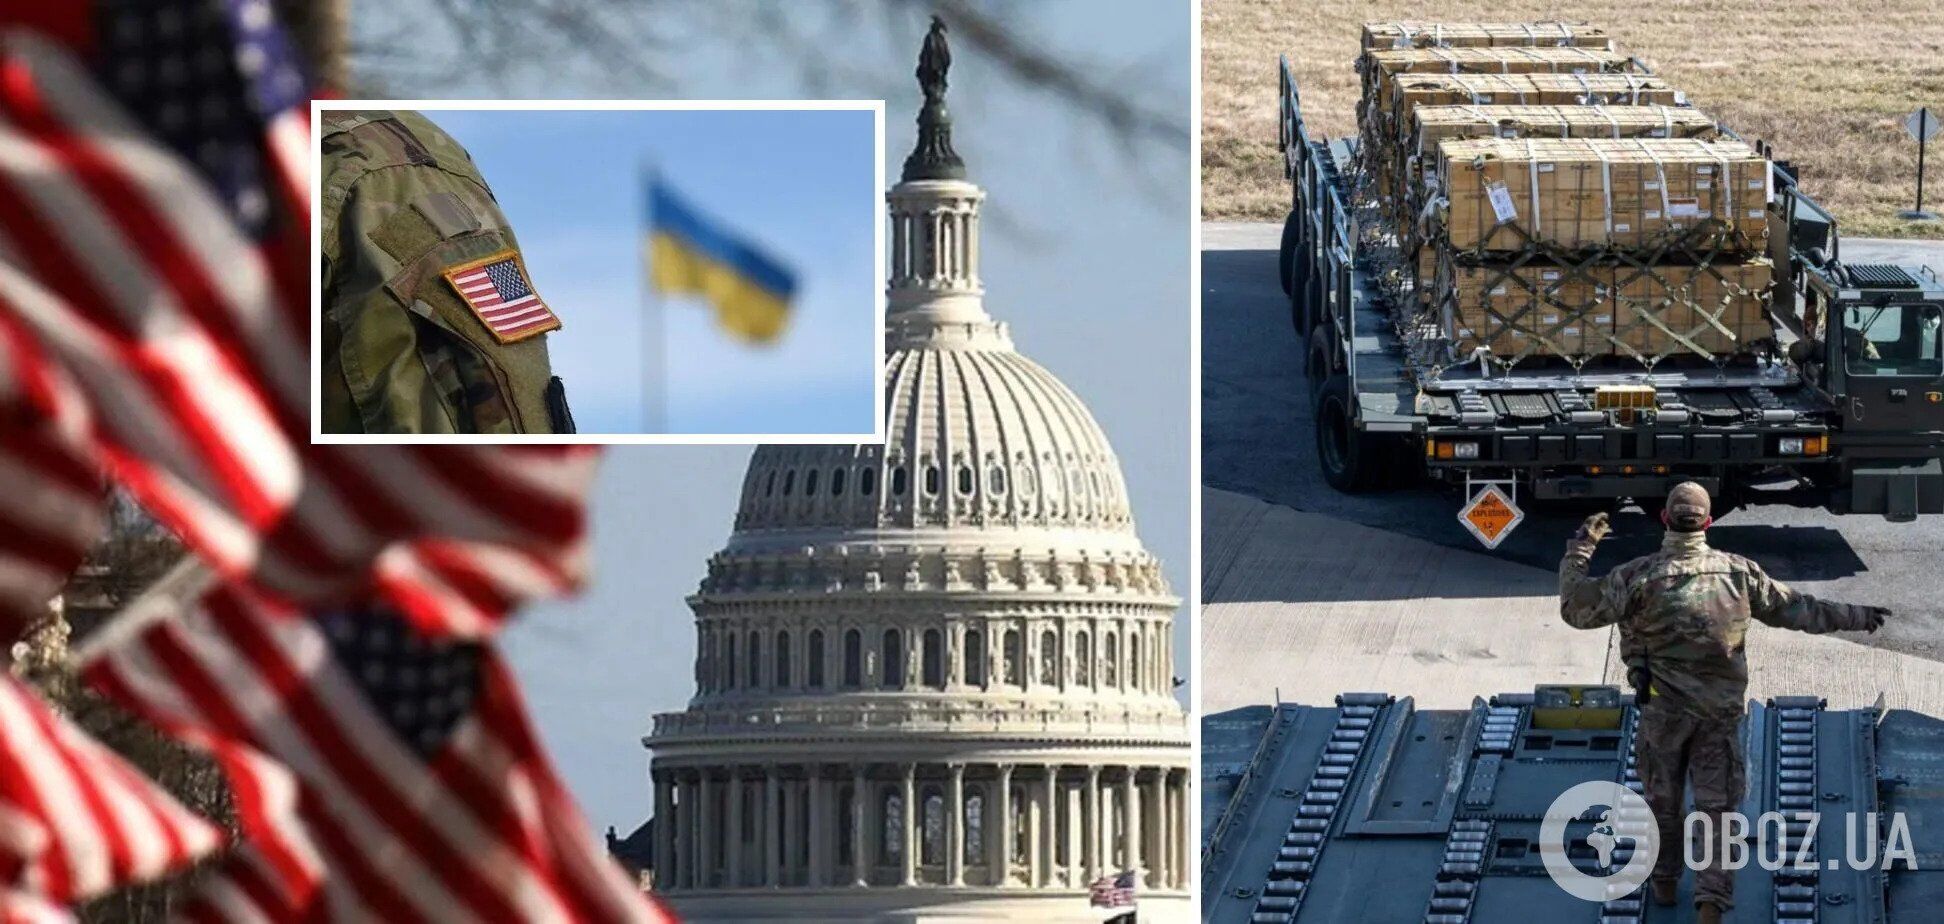 "Украина – не Афганистан": в ISW объяснили, почему США выгодна поддержка Киева во время войны